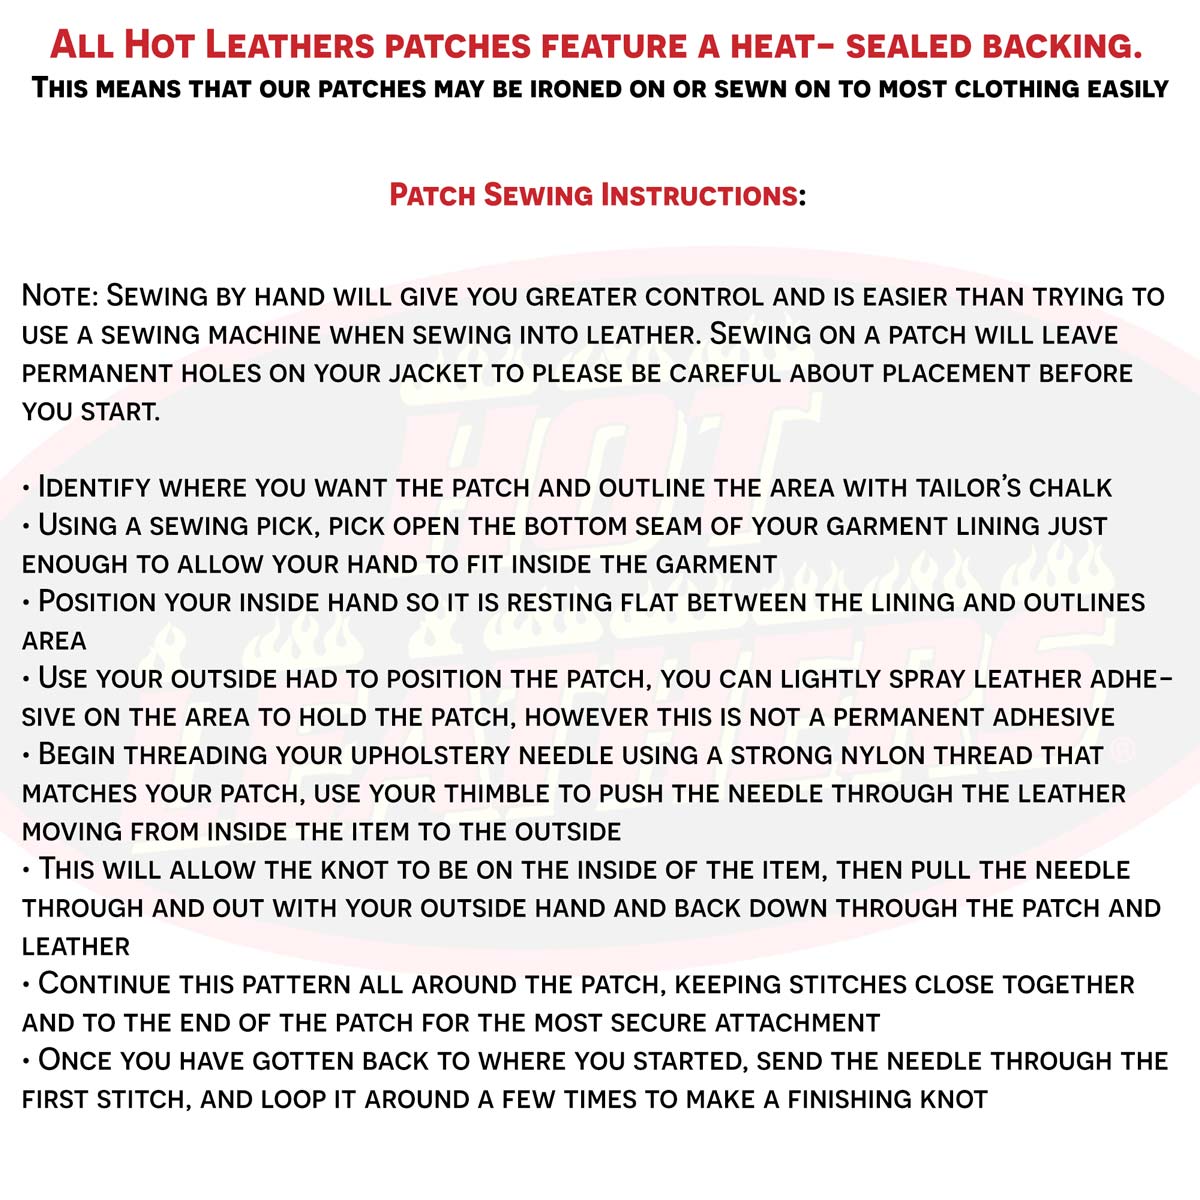 Hot Leathers South Carolina 4” X 1” Top Rocker Patch PPM4080